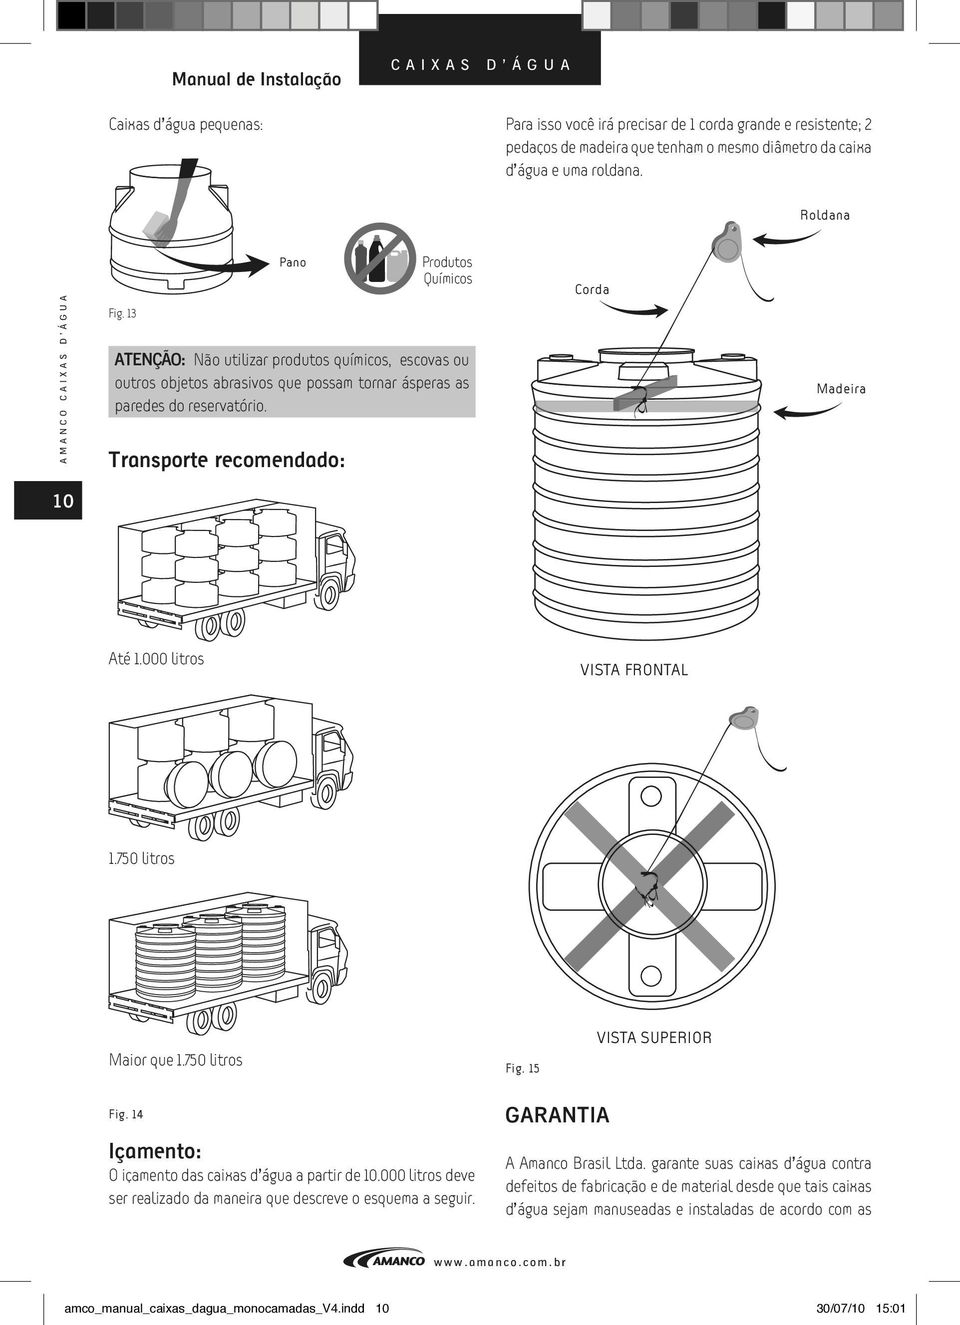 Transporte recomendado: Corda Madeira 10 Até 1.000 litros VISTA FRONTAL 1.750 litros Maior que 1.750 litros Fig. 15 VISTA SUPERIOR Fig. 14 Içamento: O içamento das caixas d água a partir de 10.